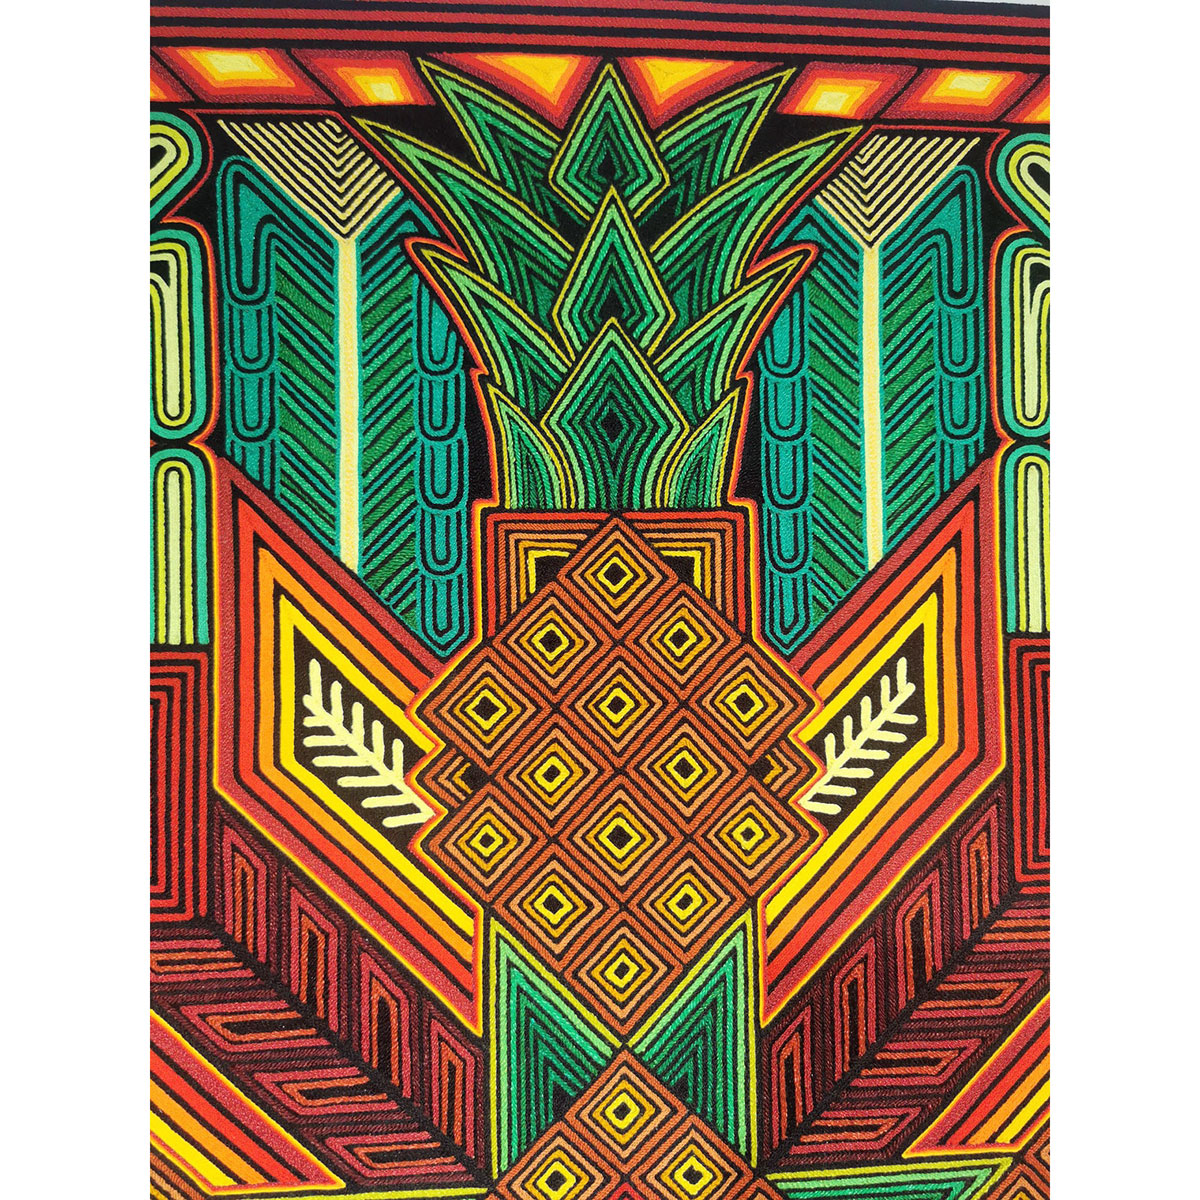 Wixárika (Huichol) Art Excelente Castro: Premier Huichol Yarn Painting Direct from Mexico Emilio de la Cruz Benitez